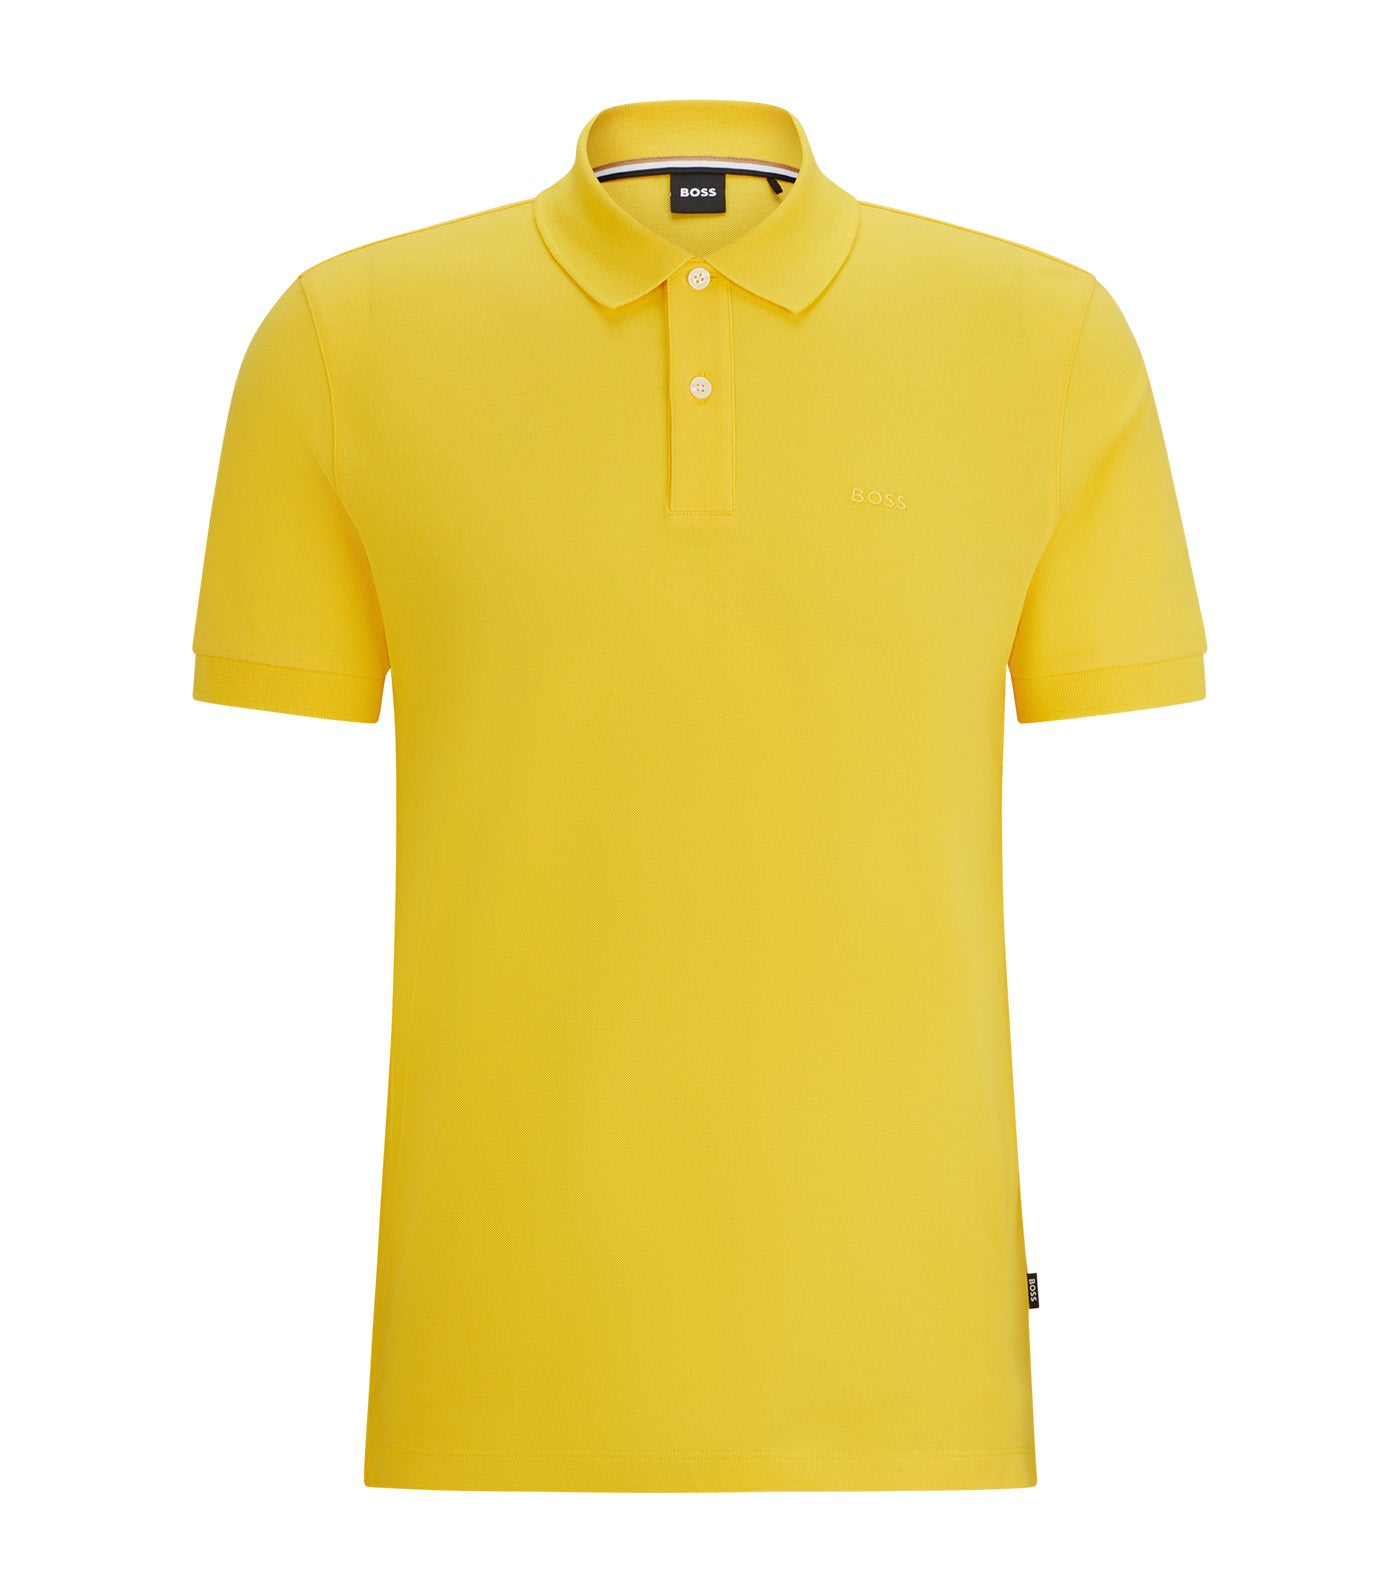 Pallas 41531 Polo Shirt Yellow